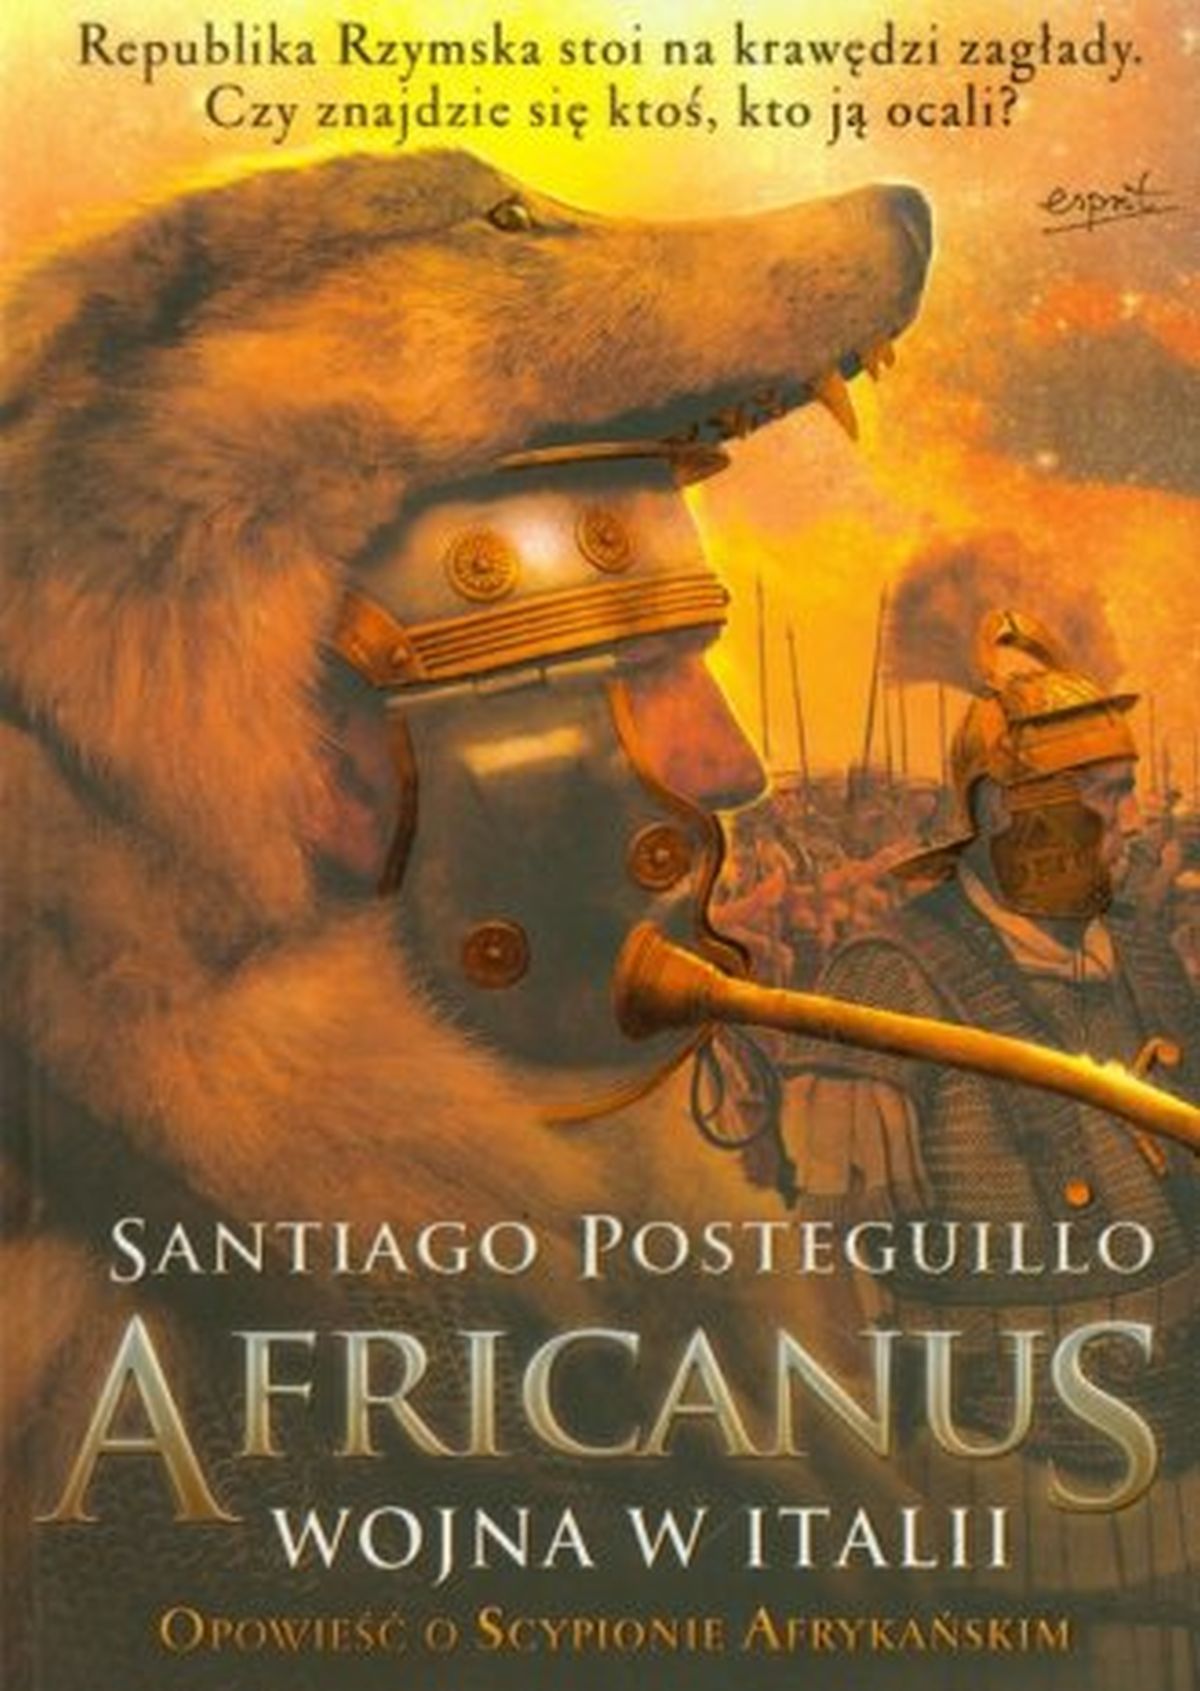 Africanus wojna w Italii. Tom 2